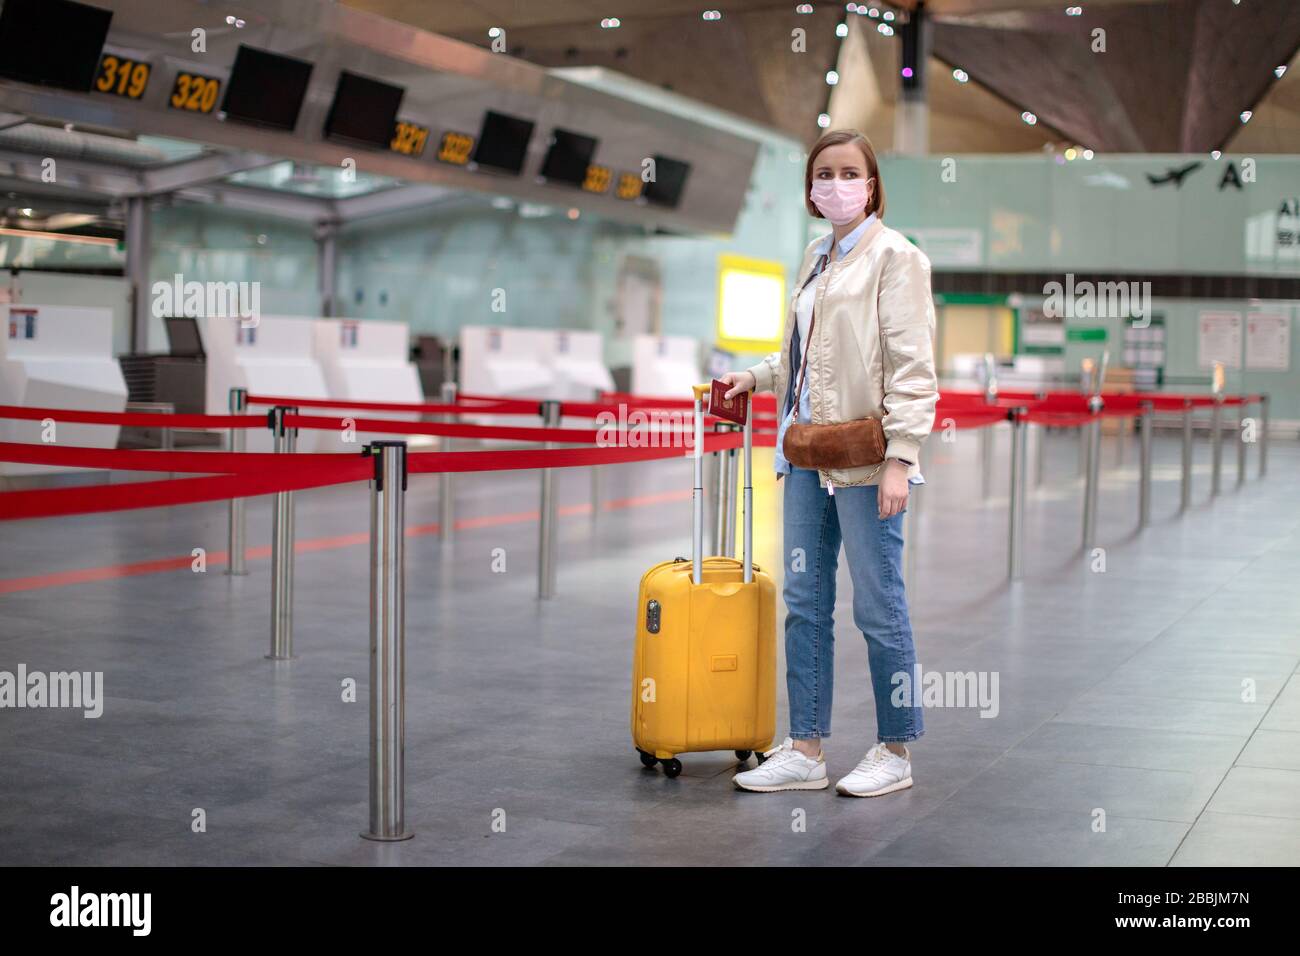 Donna con bagaglio si trova in banchi di check-in quasi vuoti presso il terminal dell'aeroporto a causa di coronavirus pandemic/Covid-19. Cancellazione del volo. Viaggi Foto Stock